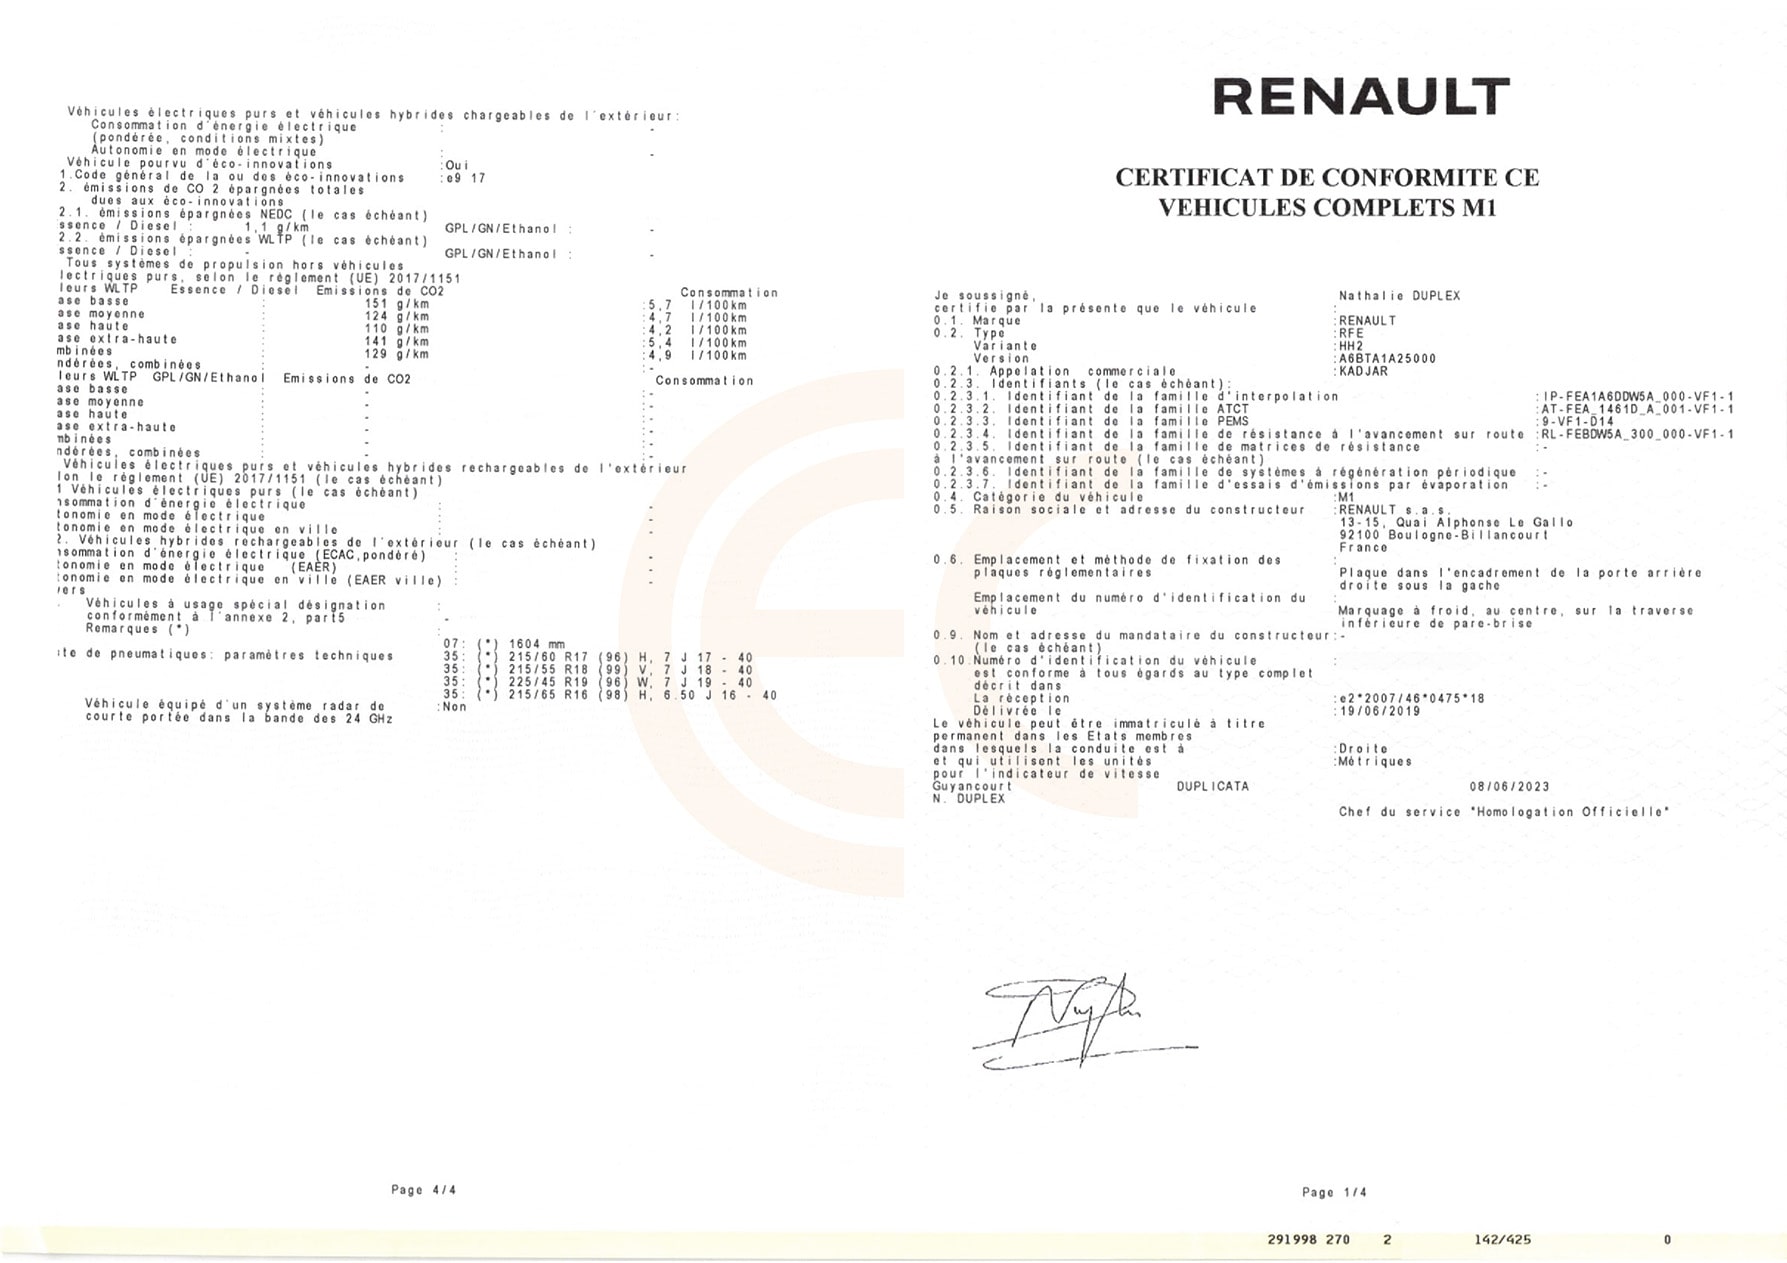 Przykład dokumentu COC dla samochodu Renault.